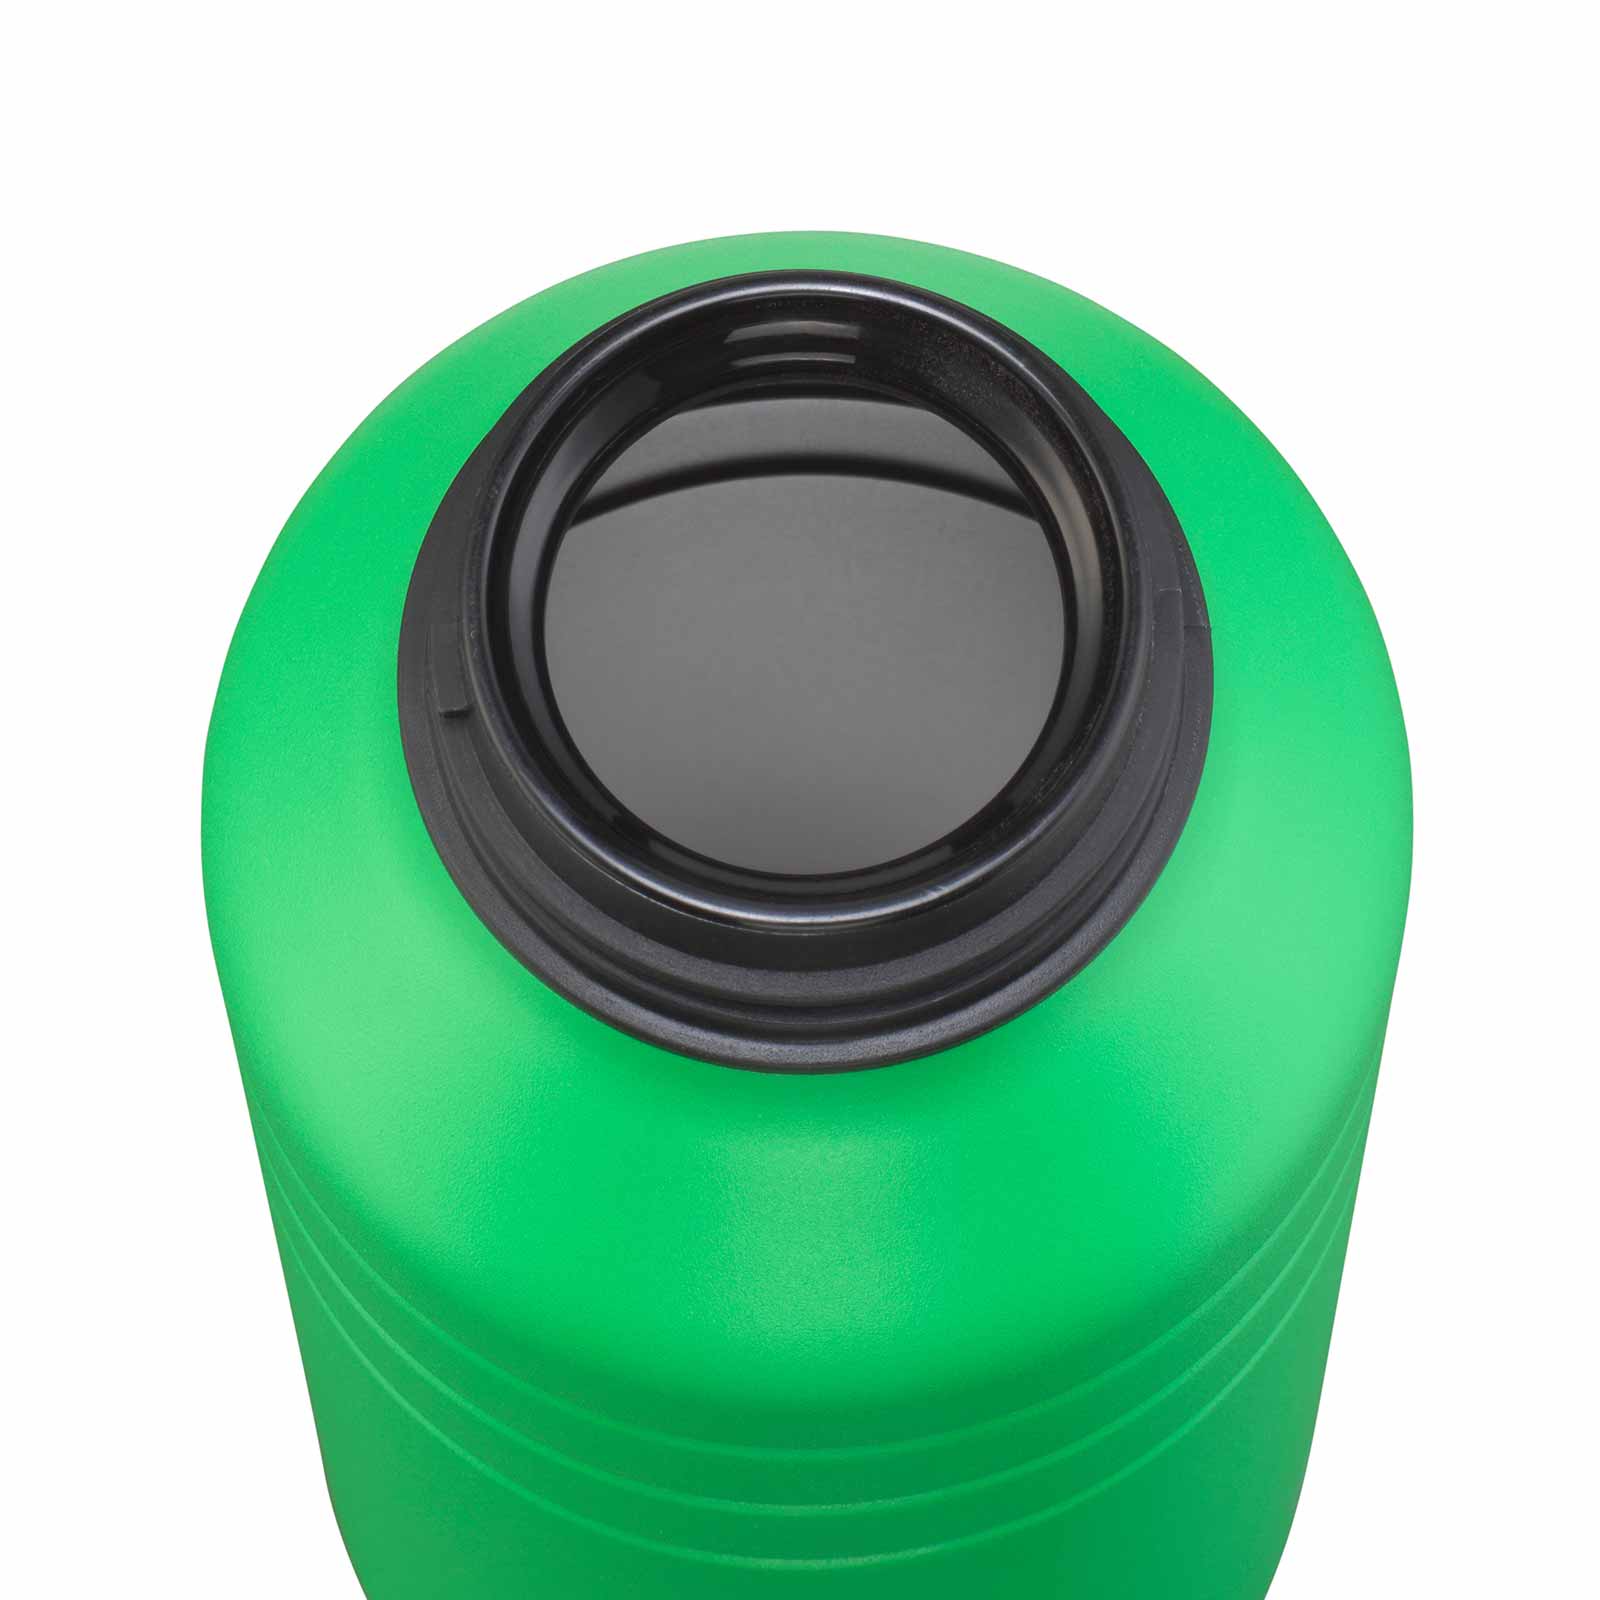 Esbit MAJORIS Edelstahl Trinkflasche Grün 1000 ml geöffnet von oben